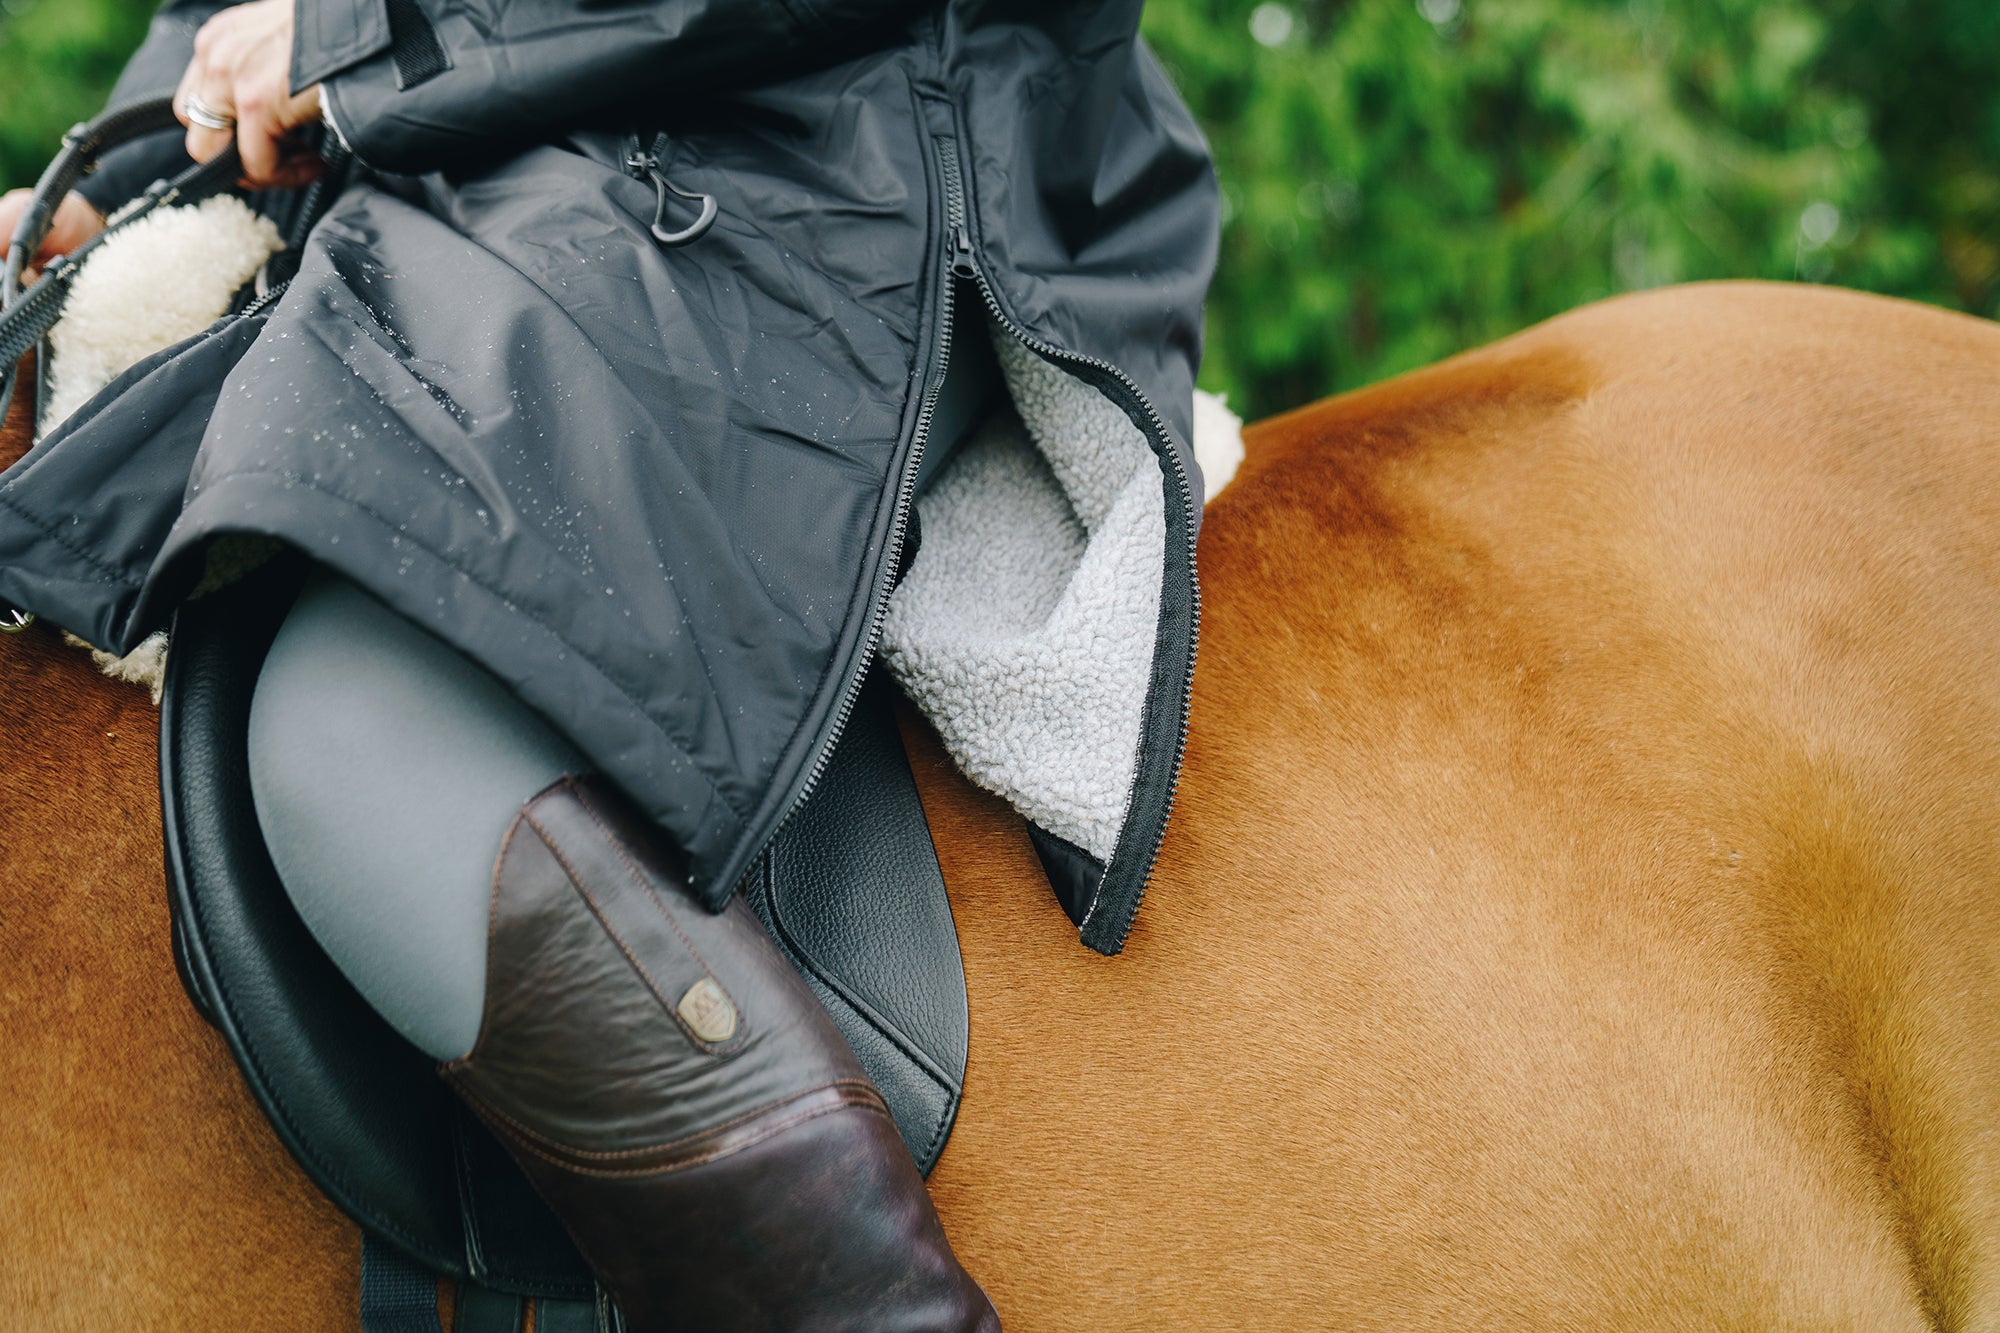 Equicoat-Adult-Black-Riding-Coat-with-saddle-zips.jpg